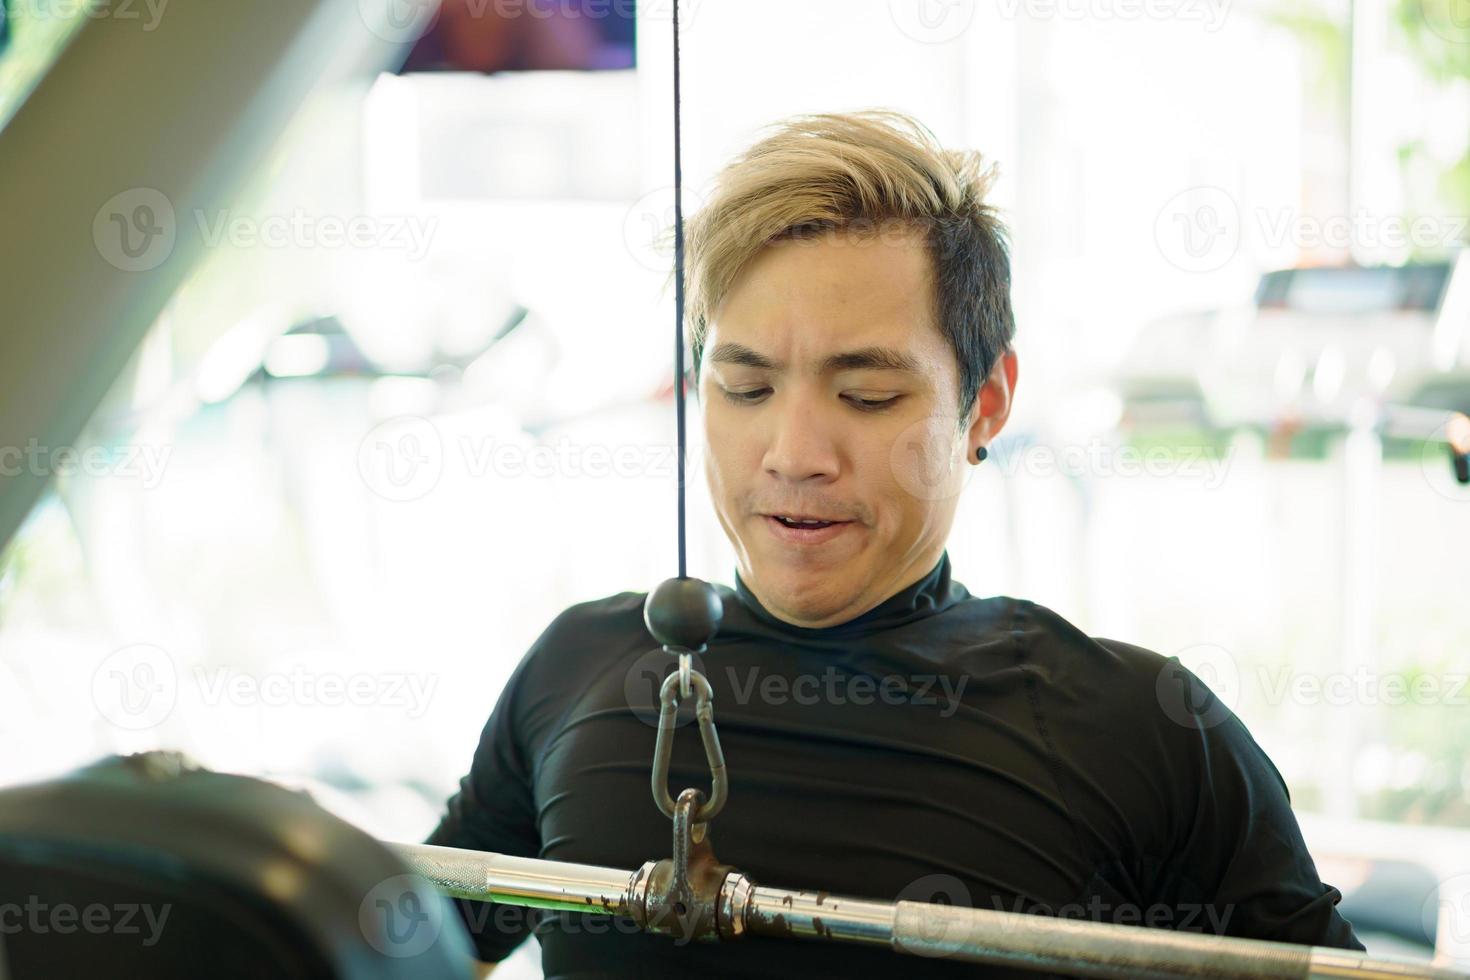 actieve jonge aziatische sportman oefent krachttraining in de sportschool met behulp van een pulldown-machine. man doet een krachttraining voor spier- en lichaamsbouw. gezonde mensen - balans tussen werk en privé foto